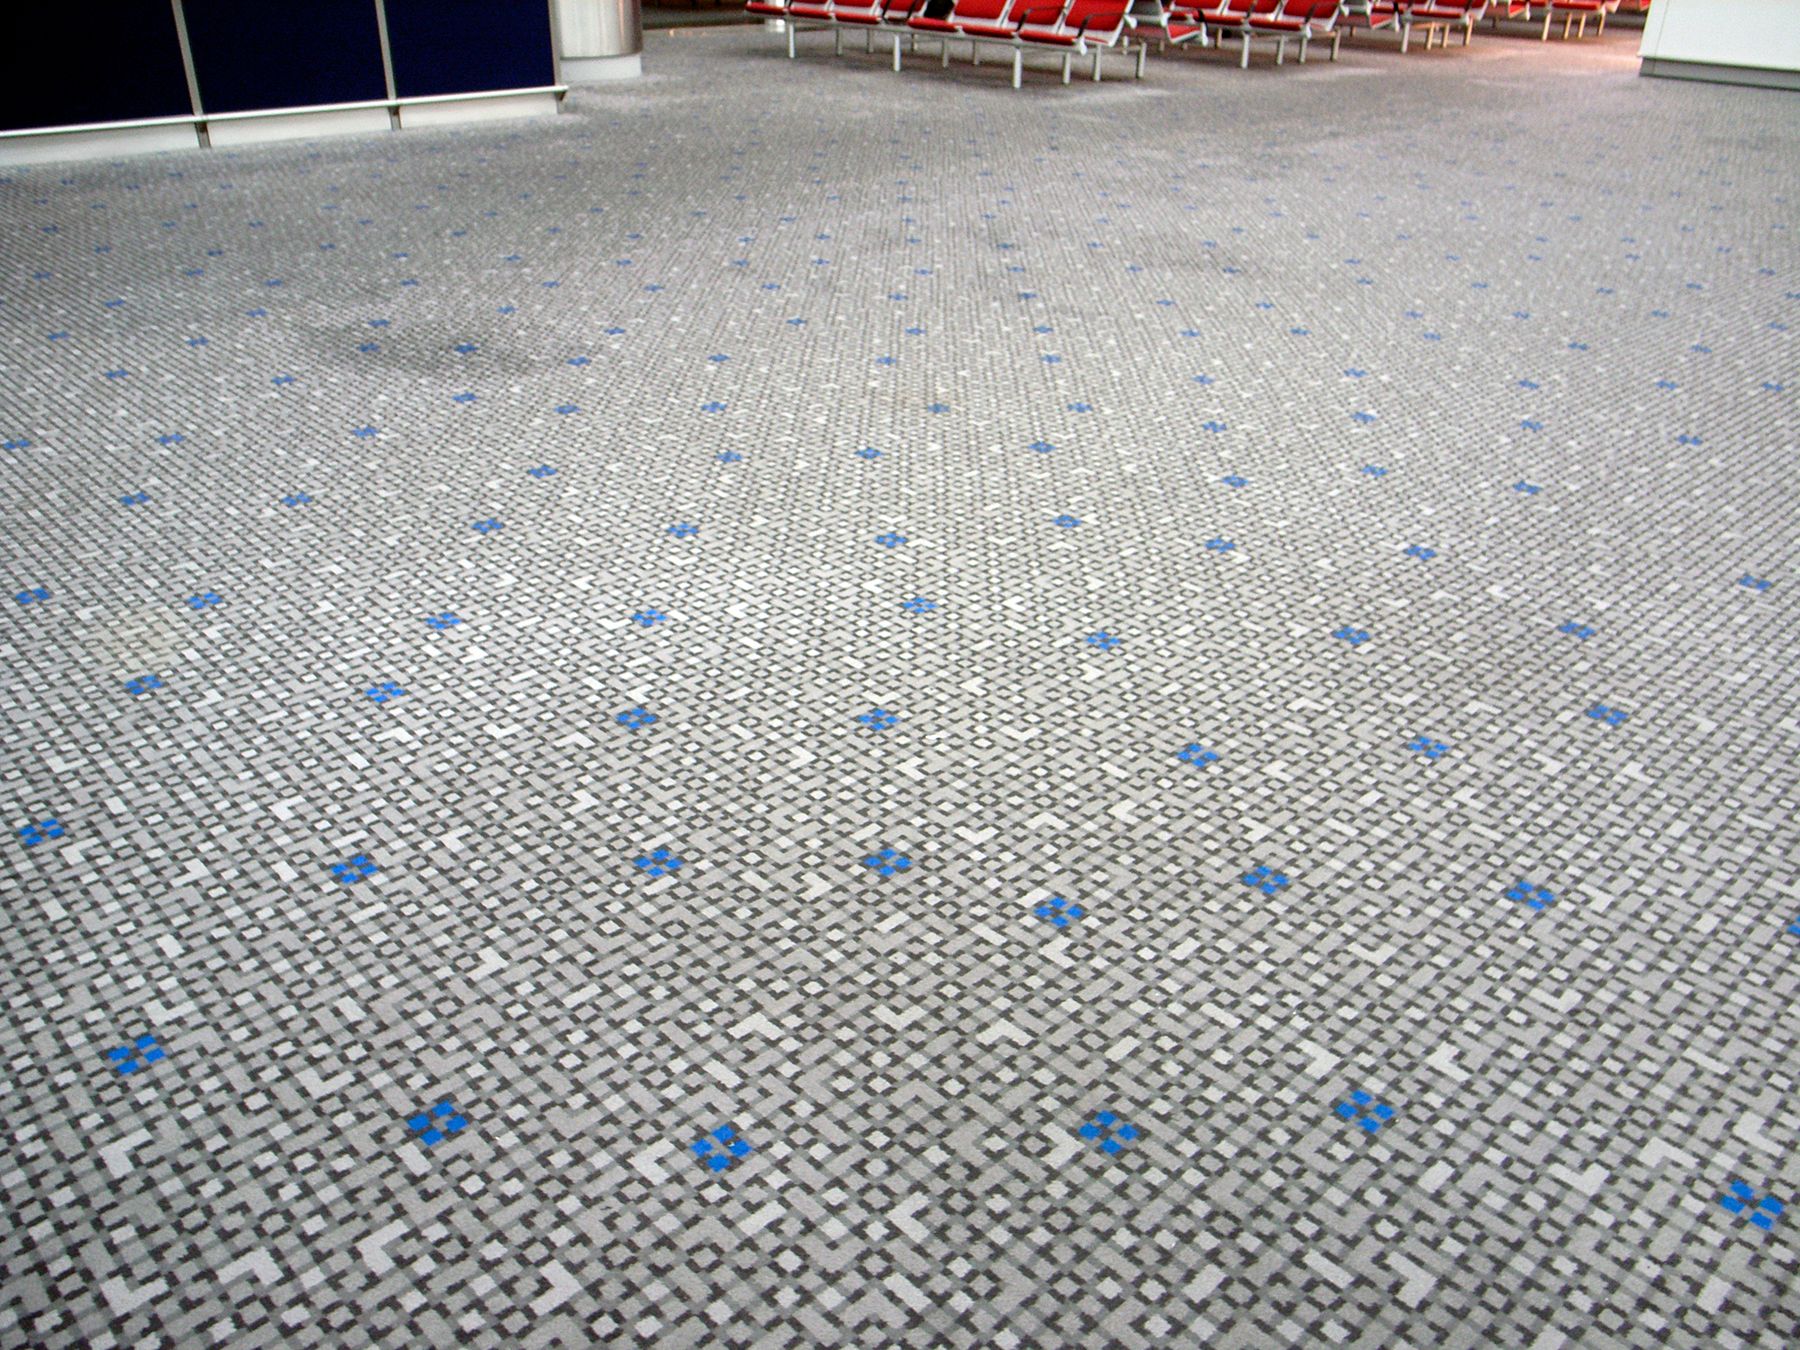 Grounds, Hong Kong International Airport, 2006